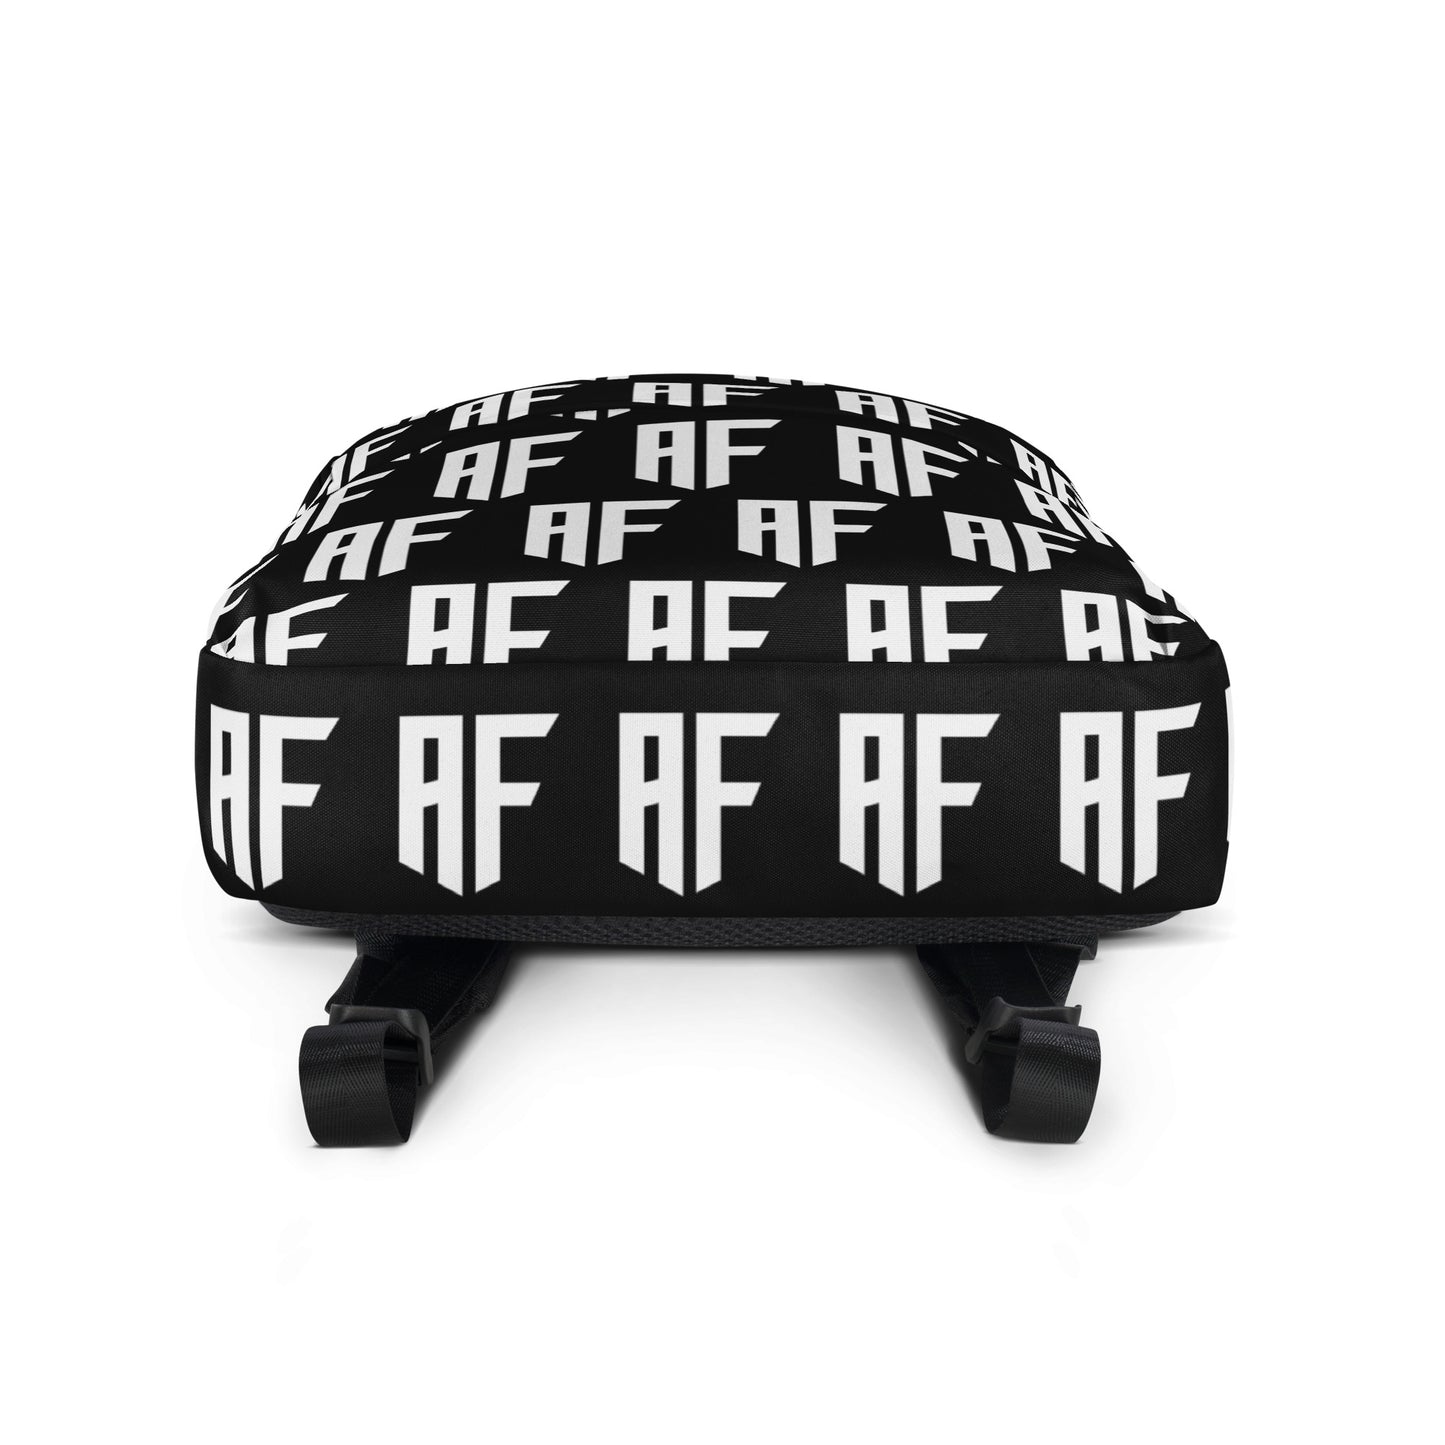 Adonis Forte "AF" Backpack